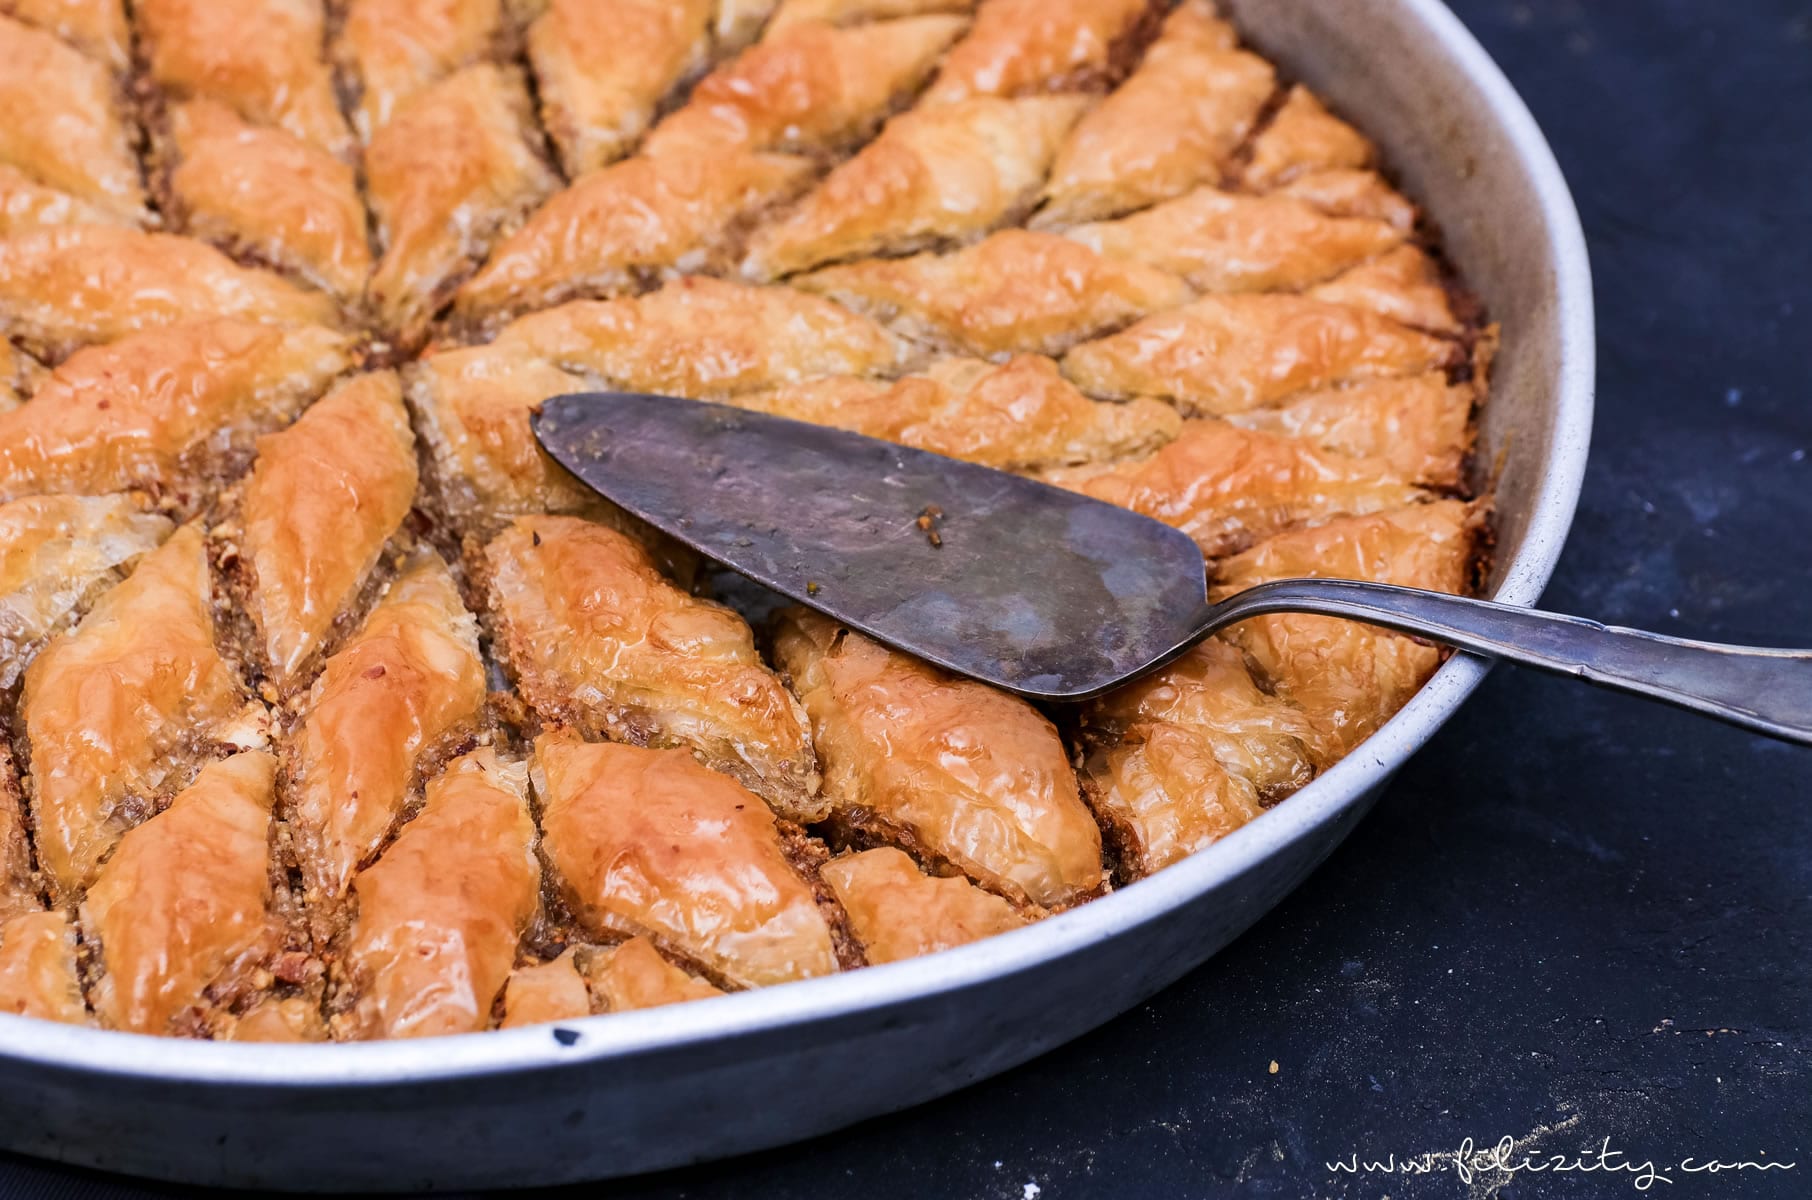 Orientalische Süßspeise: Baklava selber machen | Blätterteig-Gebäck in Zuckersirup | Filizity.com | Food-Blog aus dem Rheinland #baklava #dessert #orientalisch